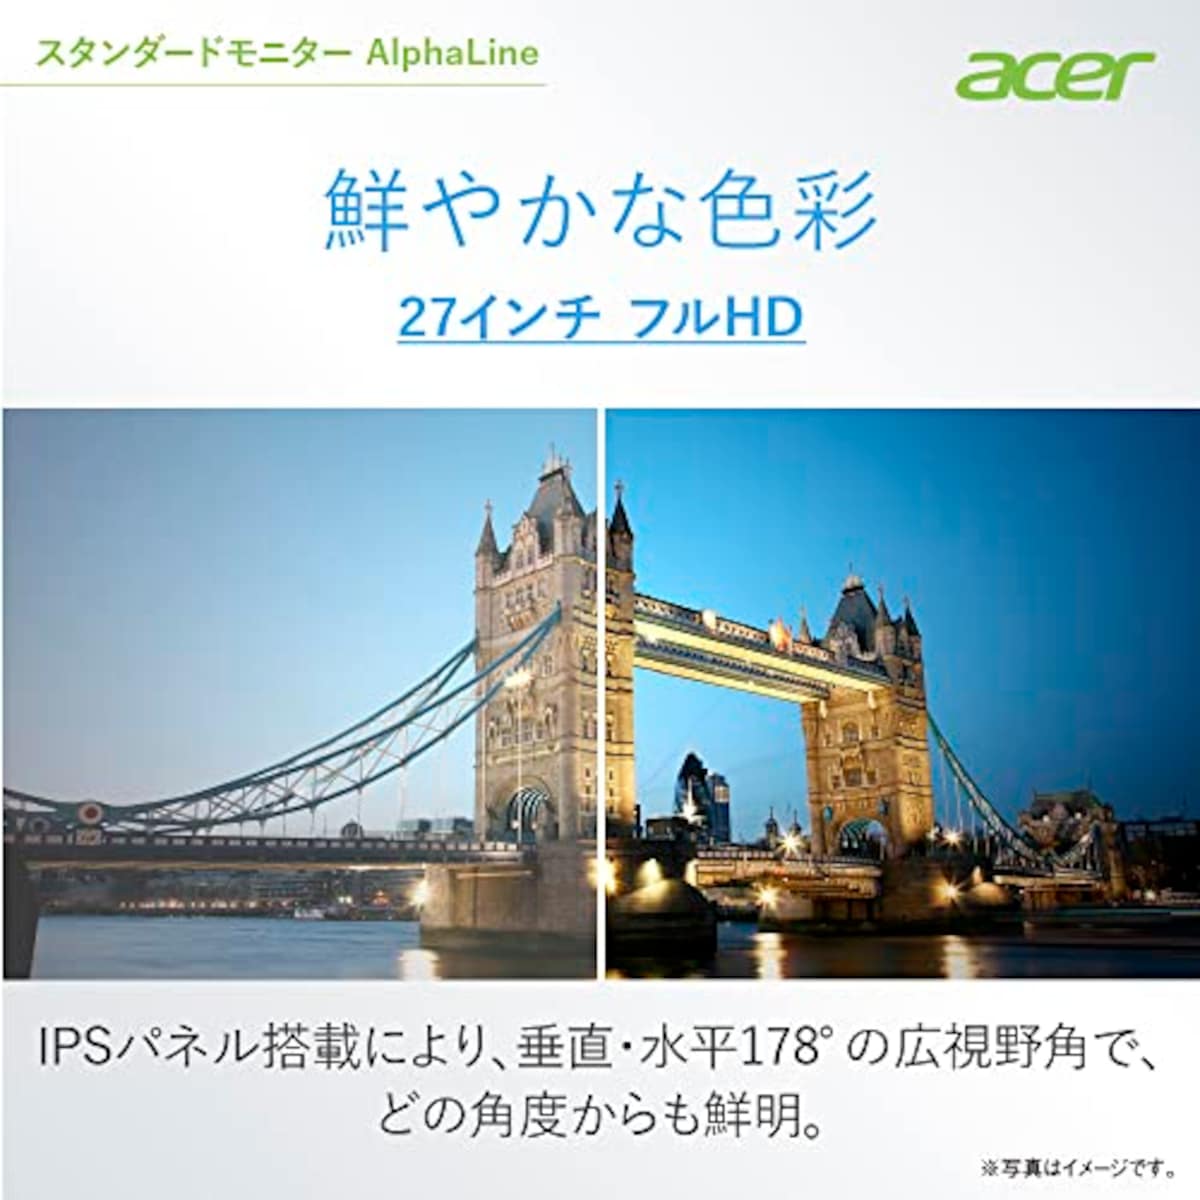  日本エイサー 【Amazon.co.jp限定】 Acer モニター AlphaLine KA272Ebmix 27インチ IPS 非光沢 フルHD 100Hz 1ms(VRB) HDMI ミニD-Sub15 VESAマウント対応 スピーカー内蔵 ヘッドホン端子 AMD FreeSync画像2 